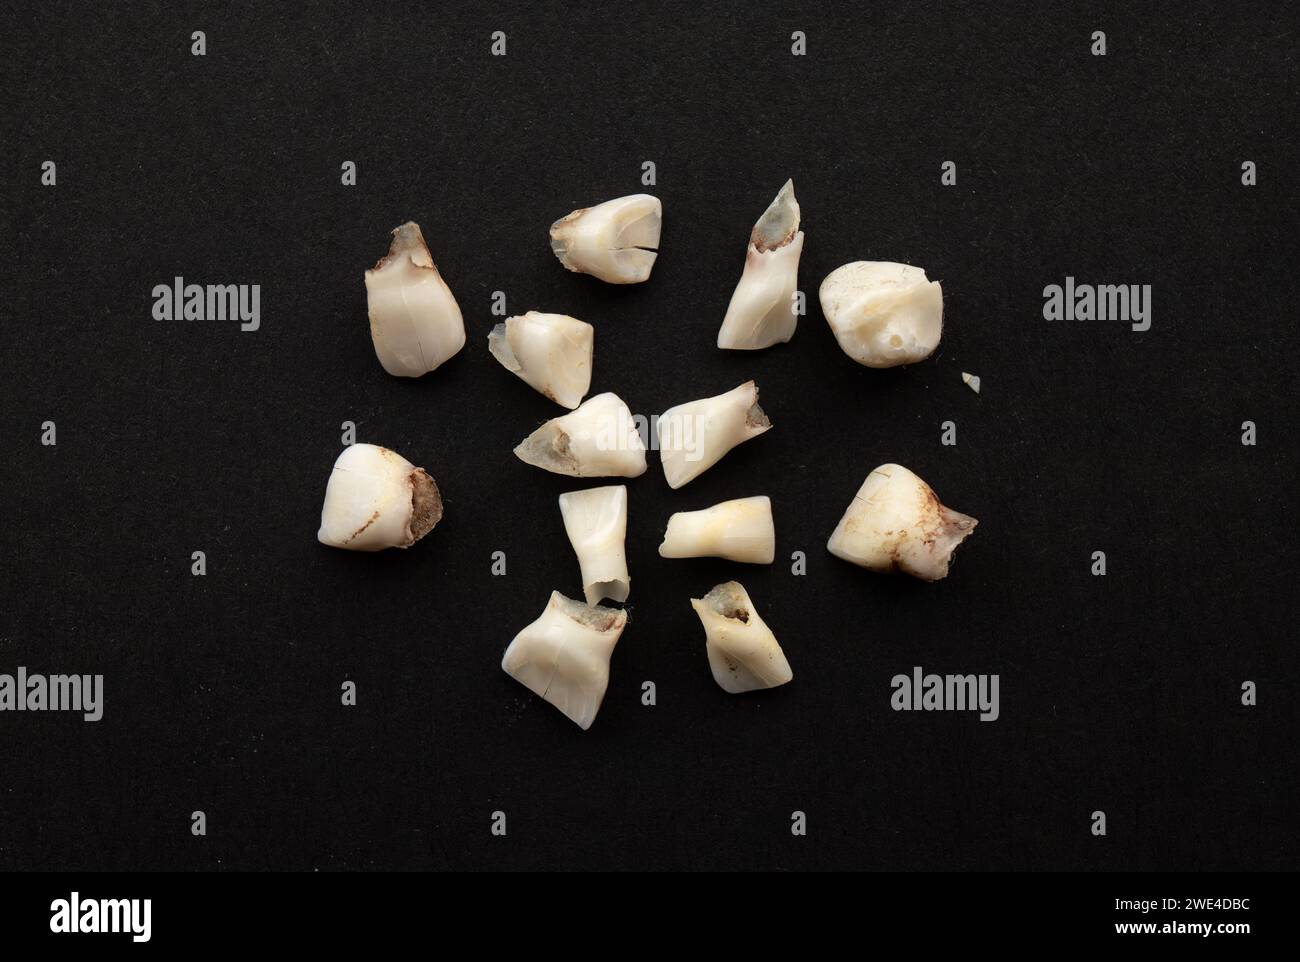 Collection de dents caduques qui sont également connues sous le nom de dents de bébé, lait, dents primaires ou primaires. Arrière-plan de couleur noire. Banque D'Images